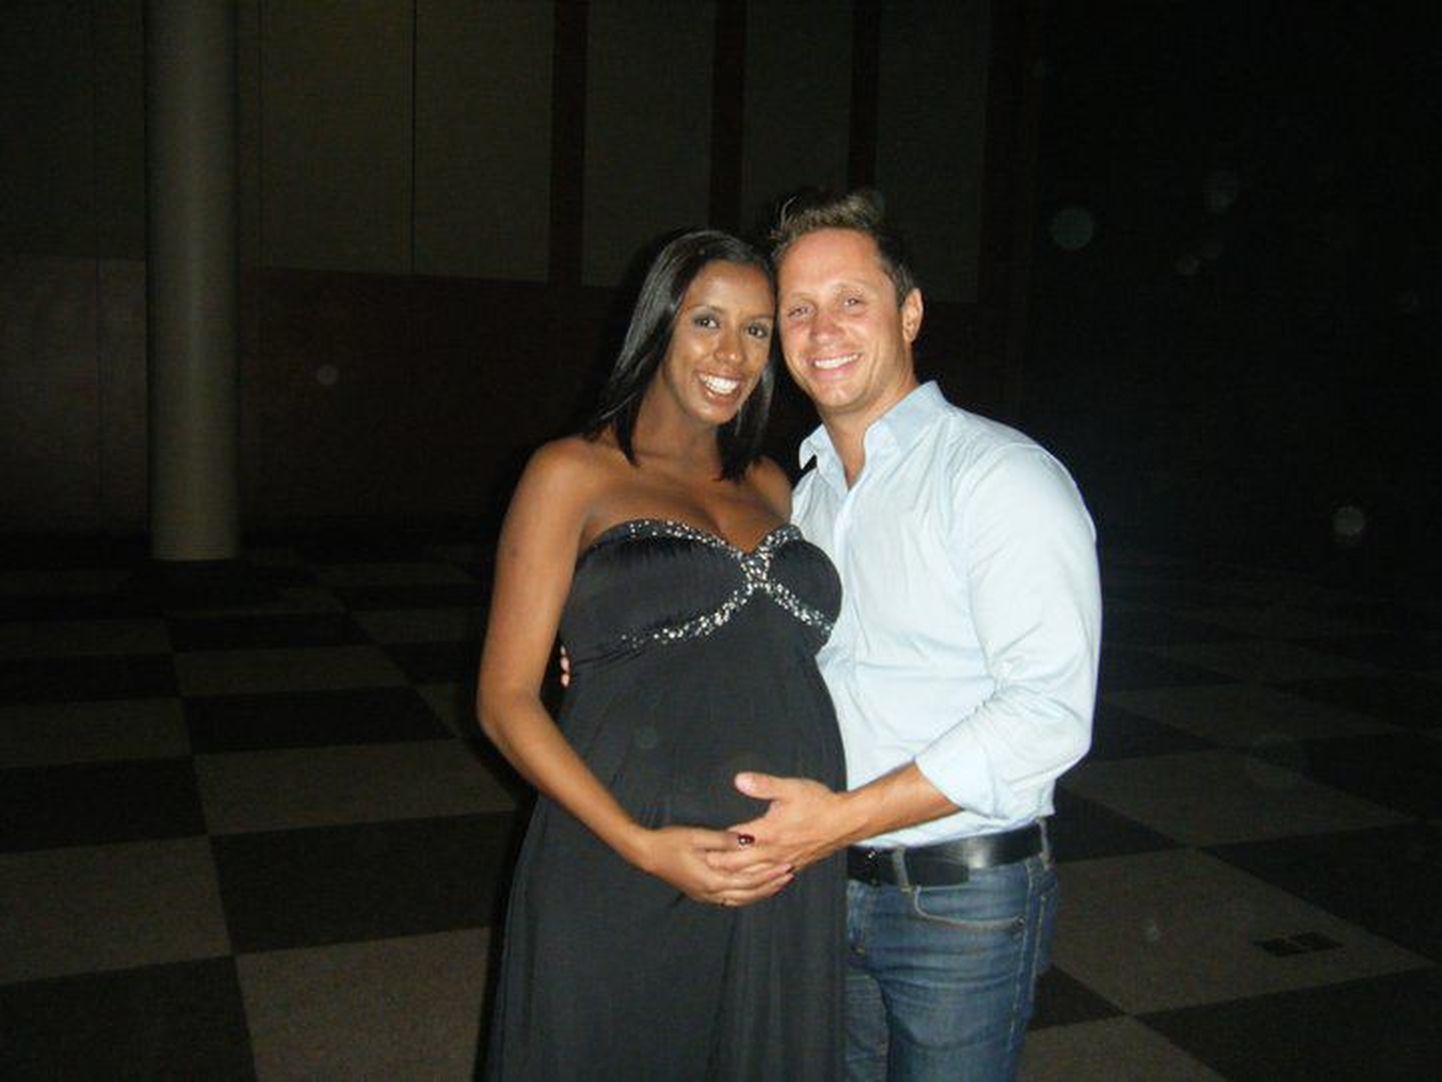 Aila ja Dimi ootavad lapse sündi.